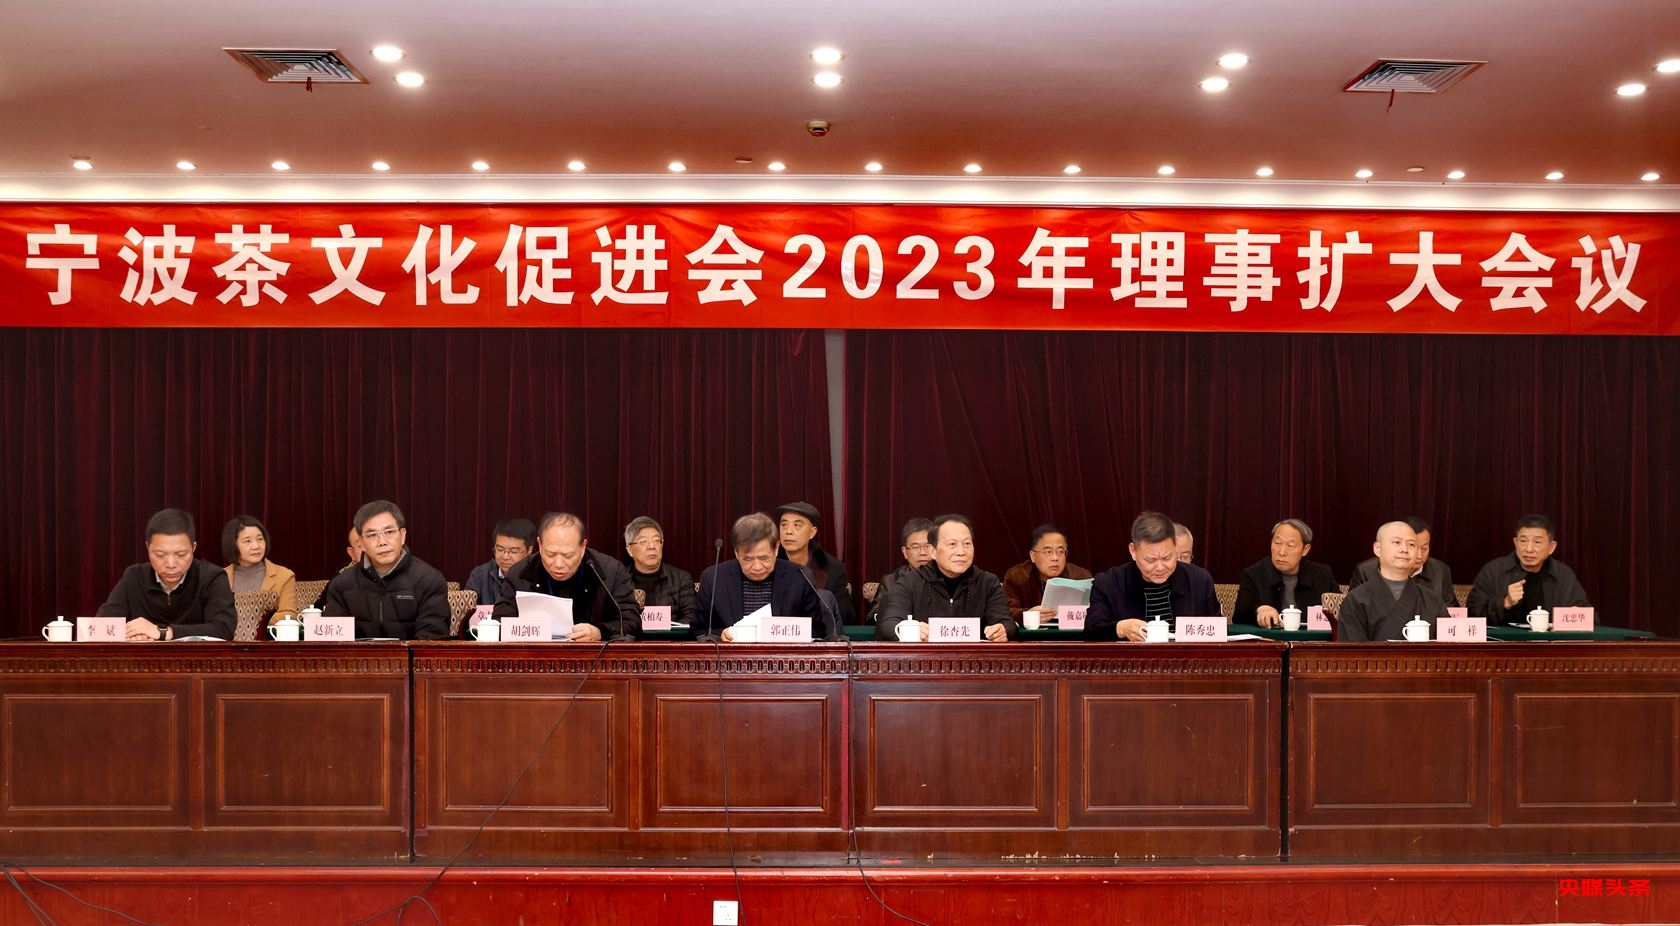 宁波茶文化促进会2023年理事扩大会议在宁波饭店举行